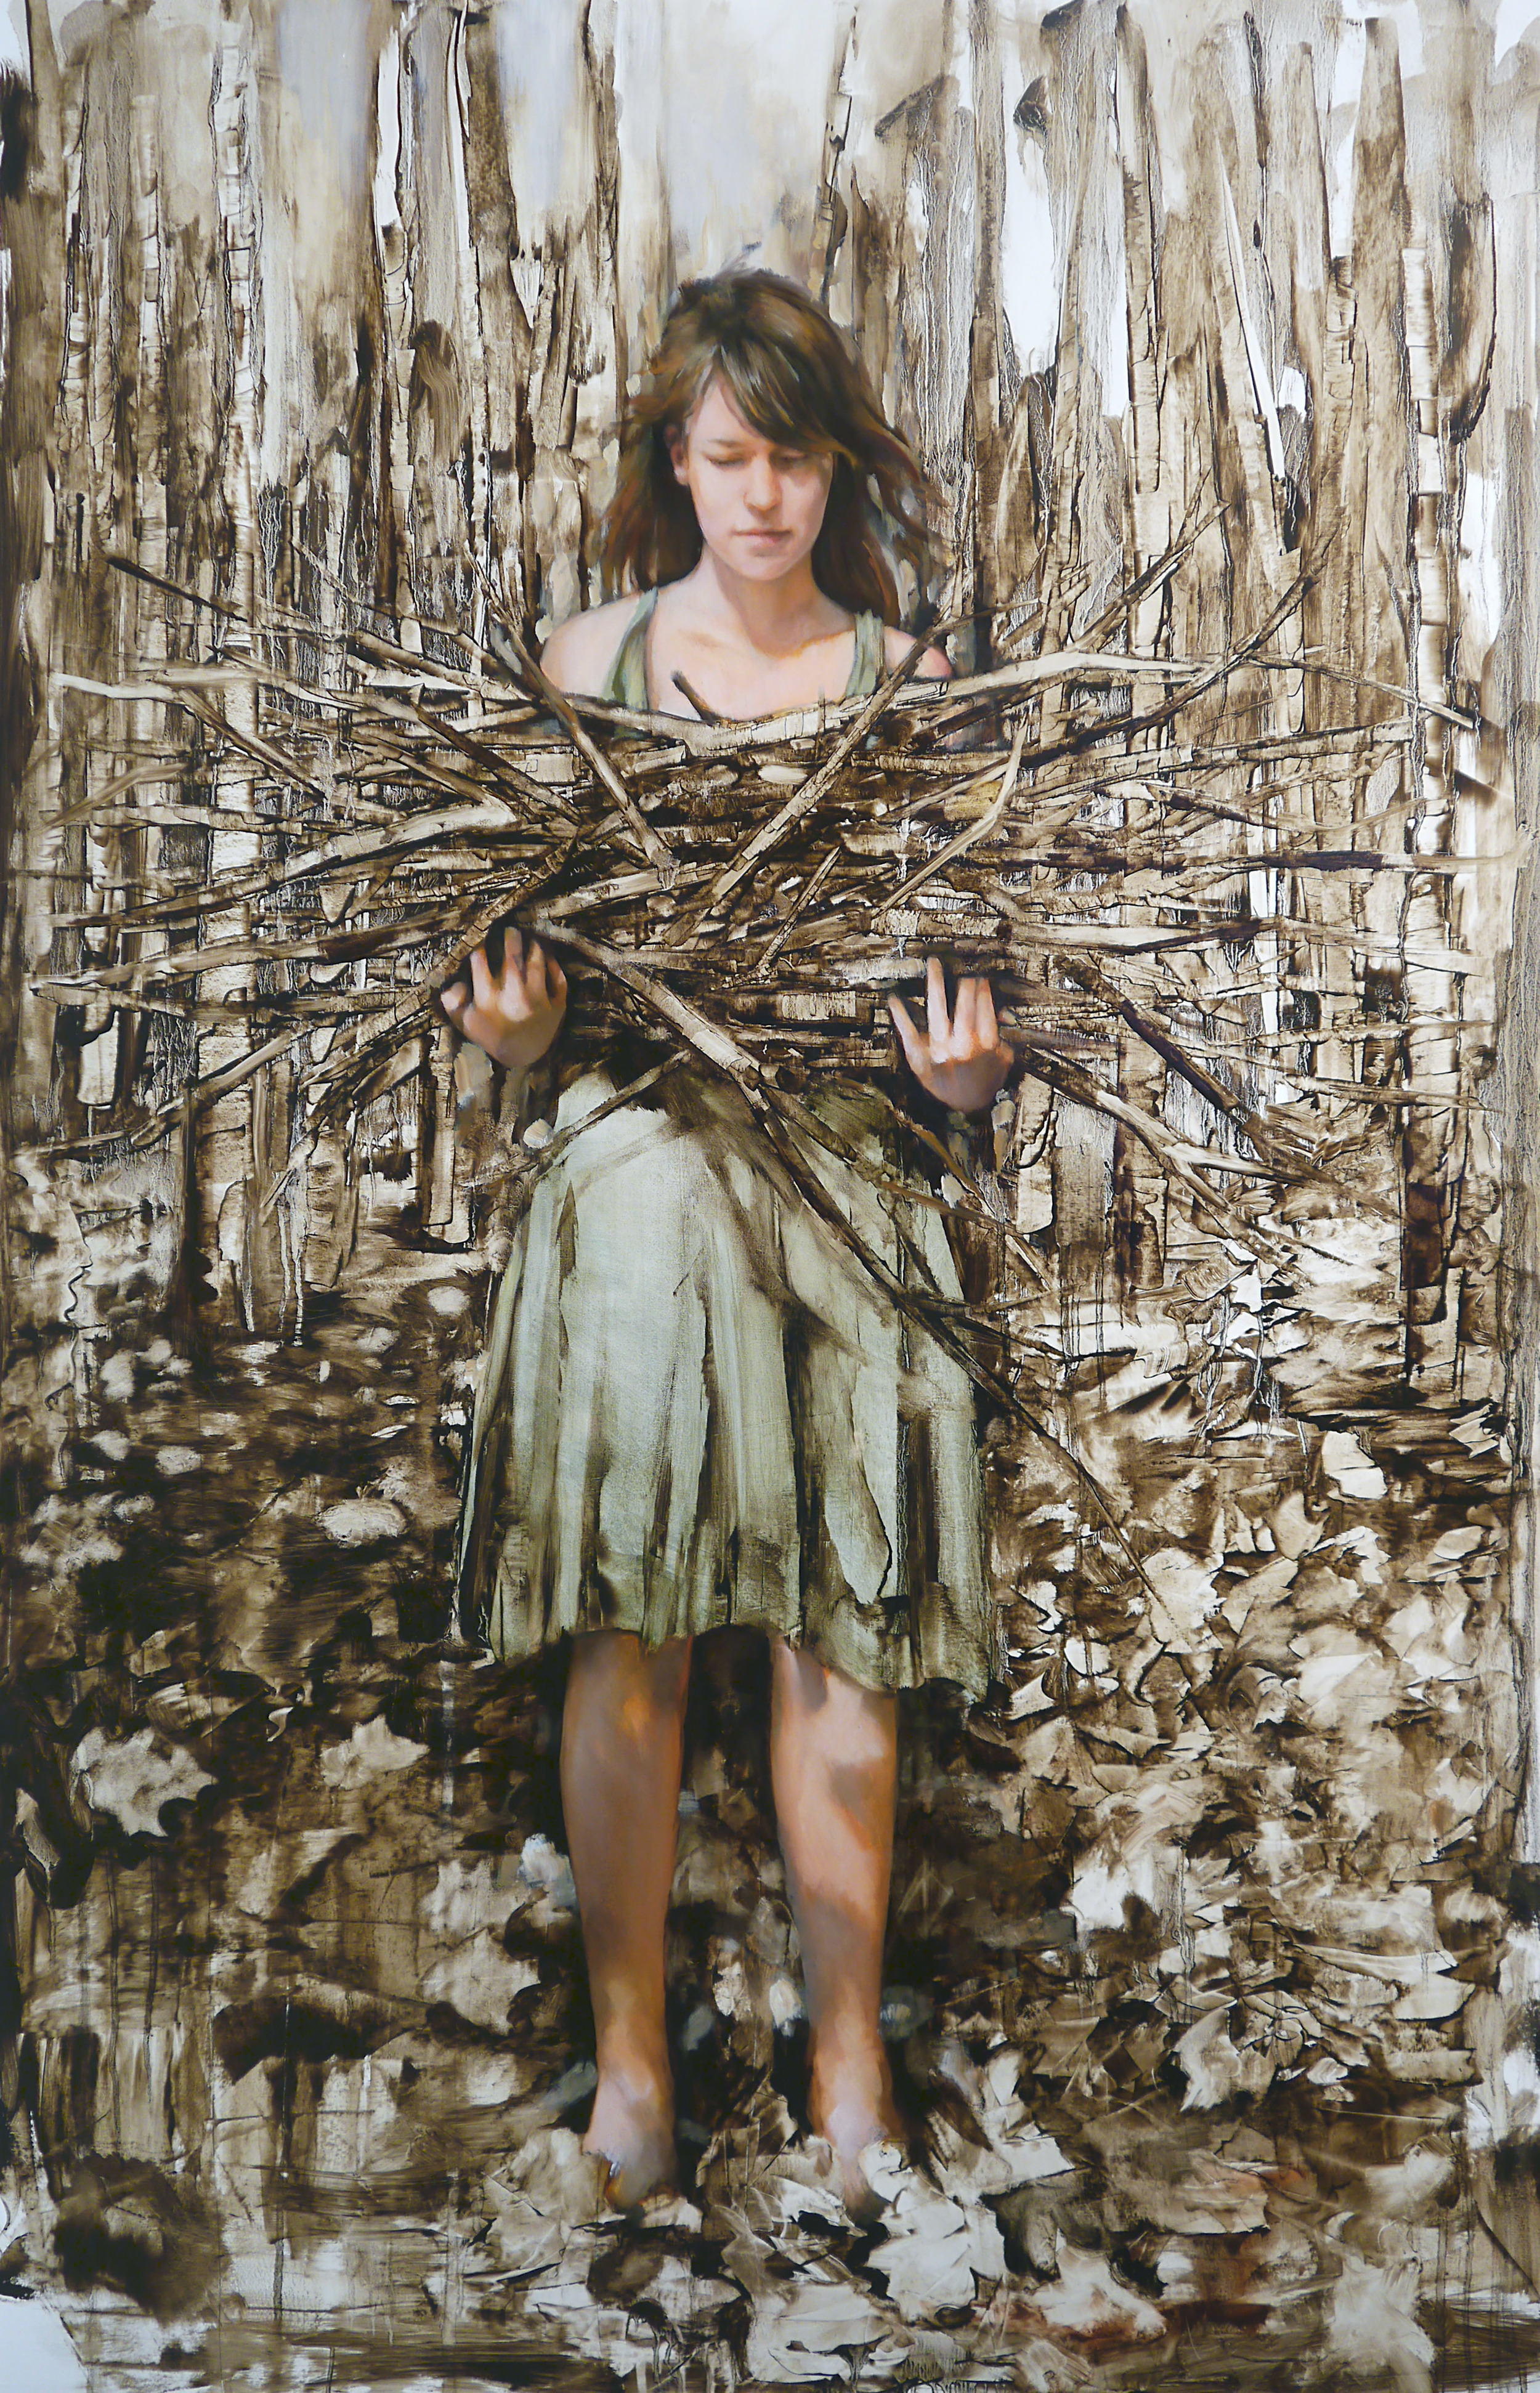 Stick Gatherer, Oil on paper, 44" x 30"